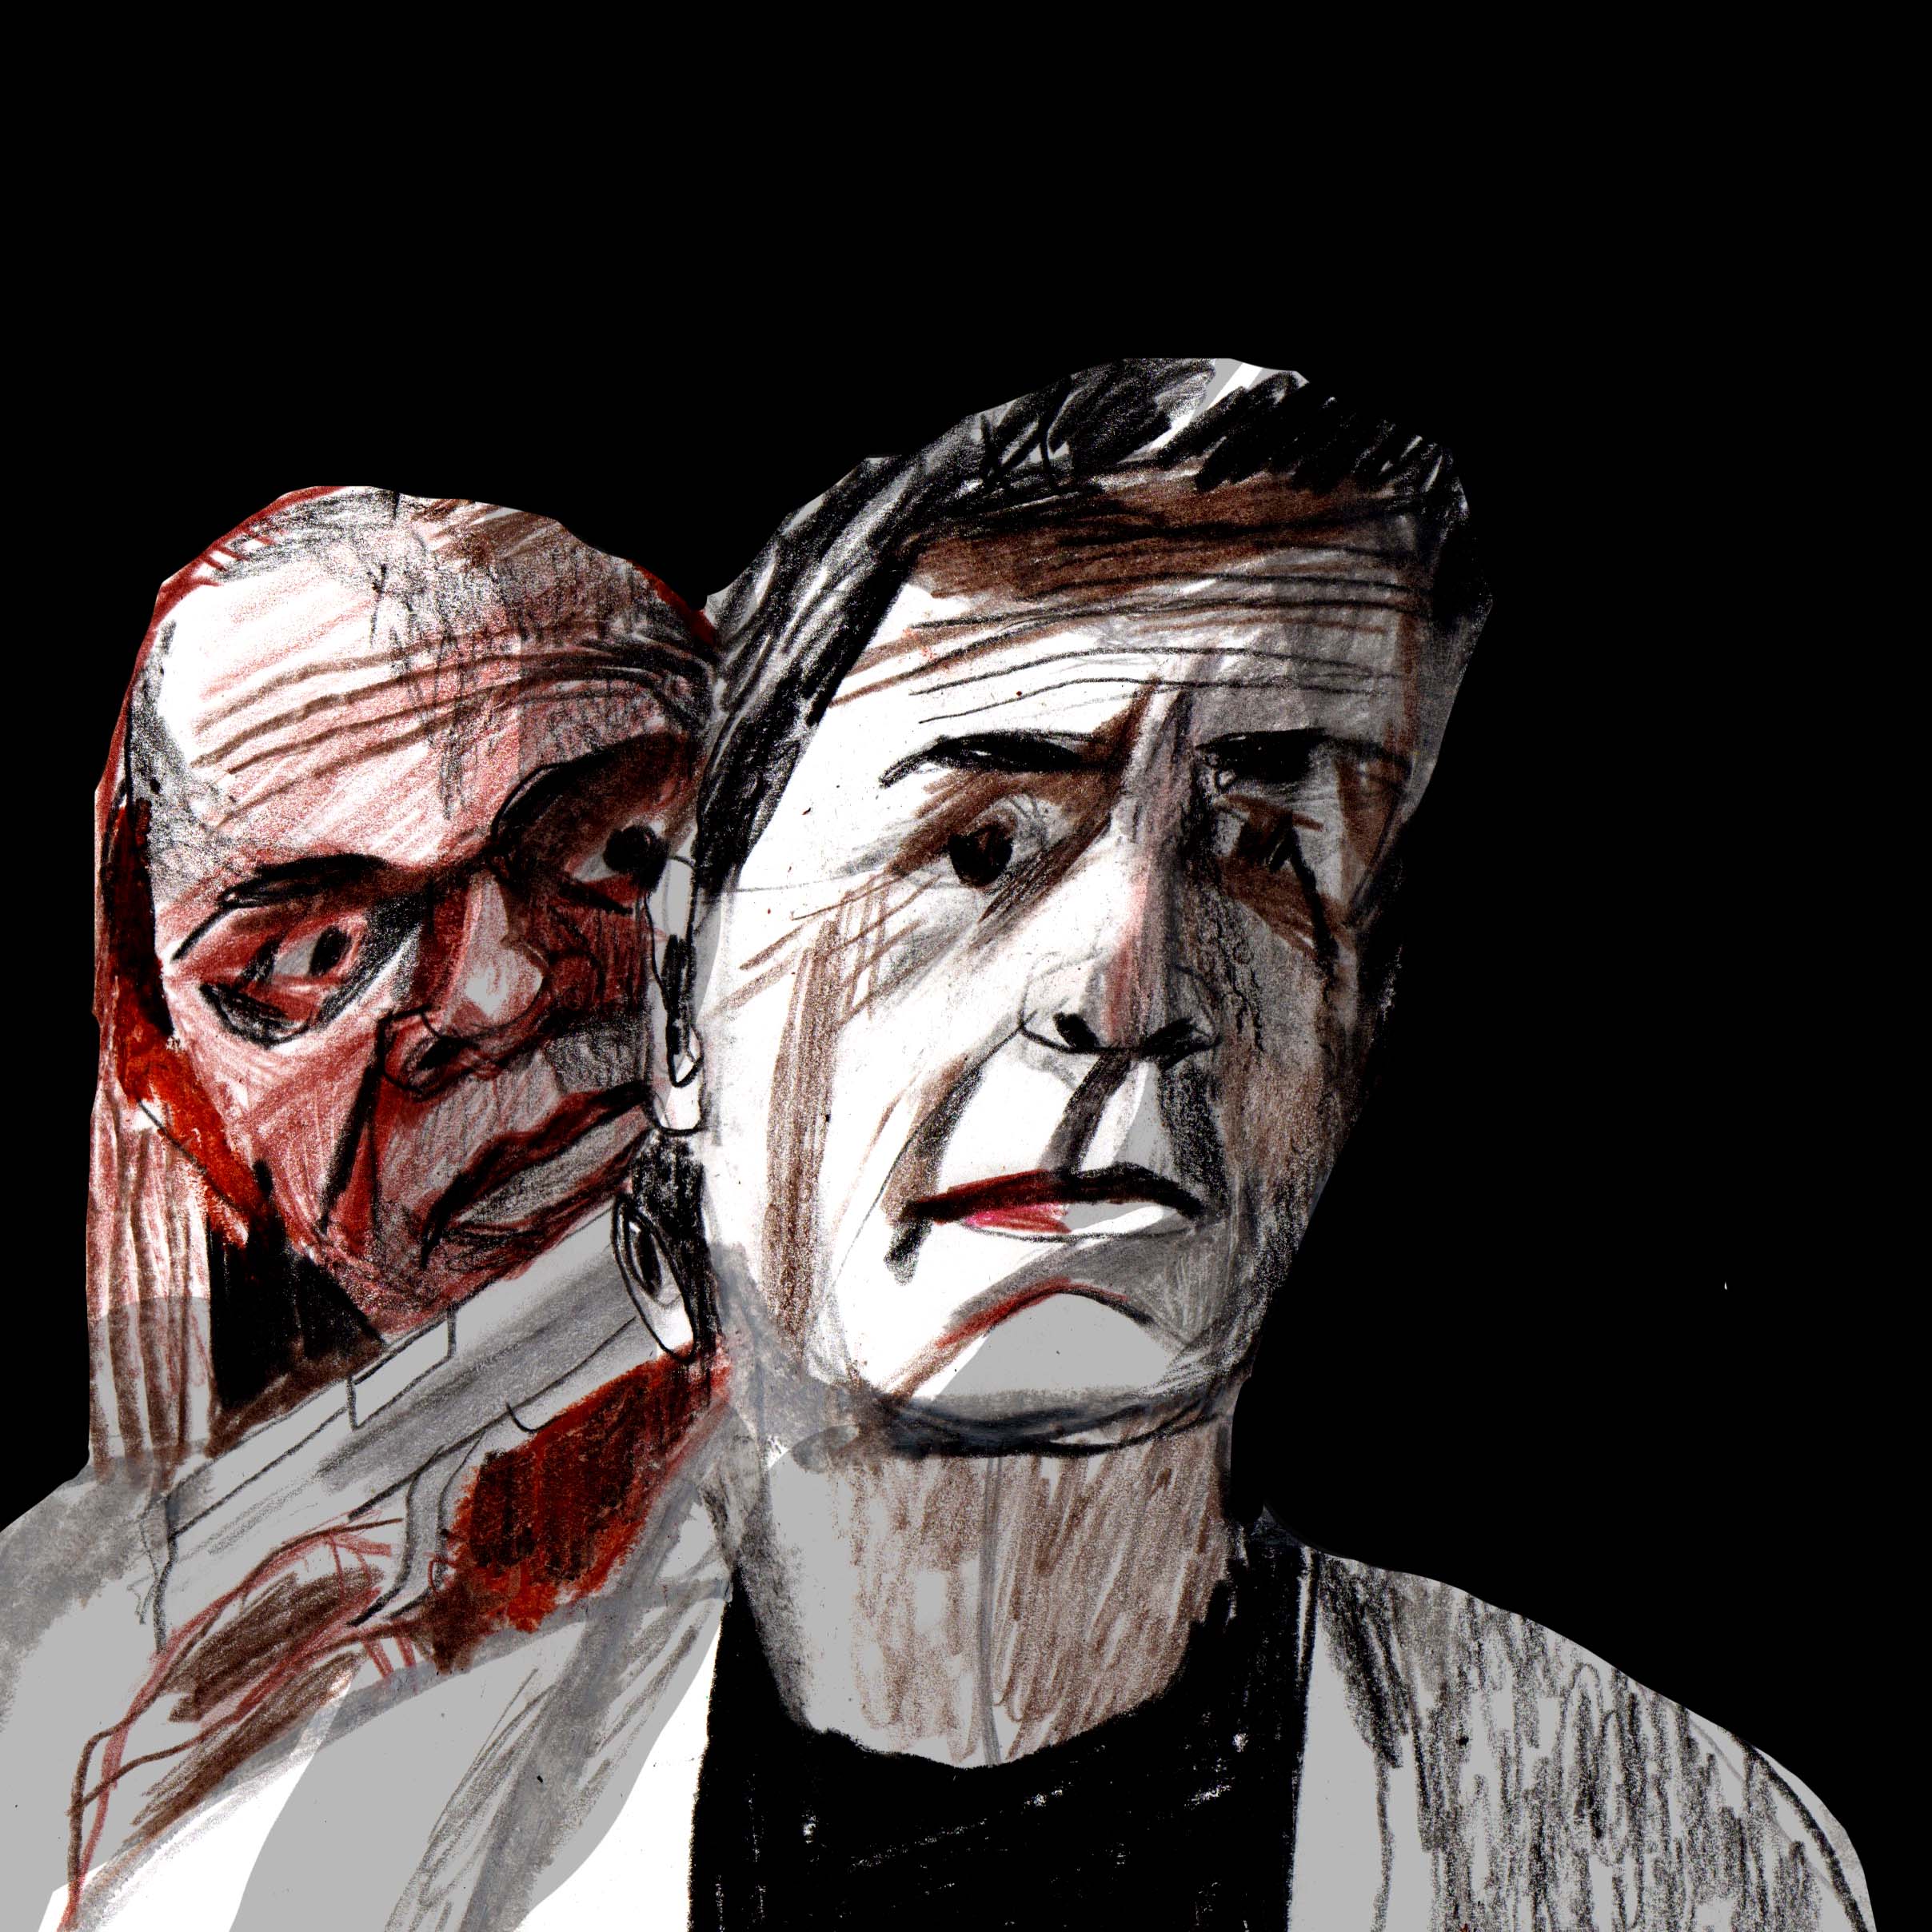 Series of illustrations to Tarantino's movie 'Jackie Brown' by Stasia Kotikova 1/3